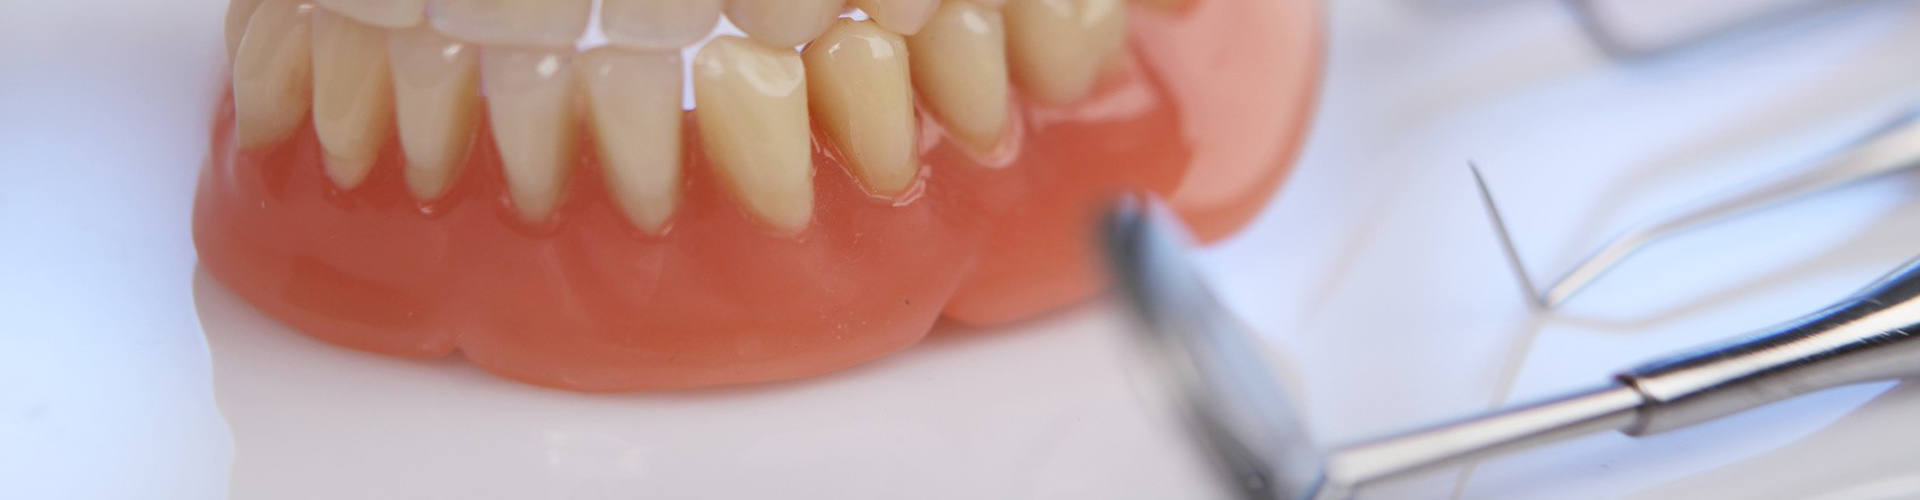 Вестибулопластика в стоматологии: показания к операции.